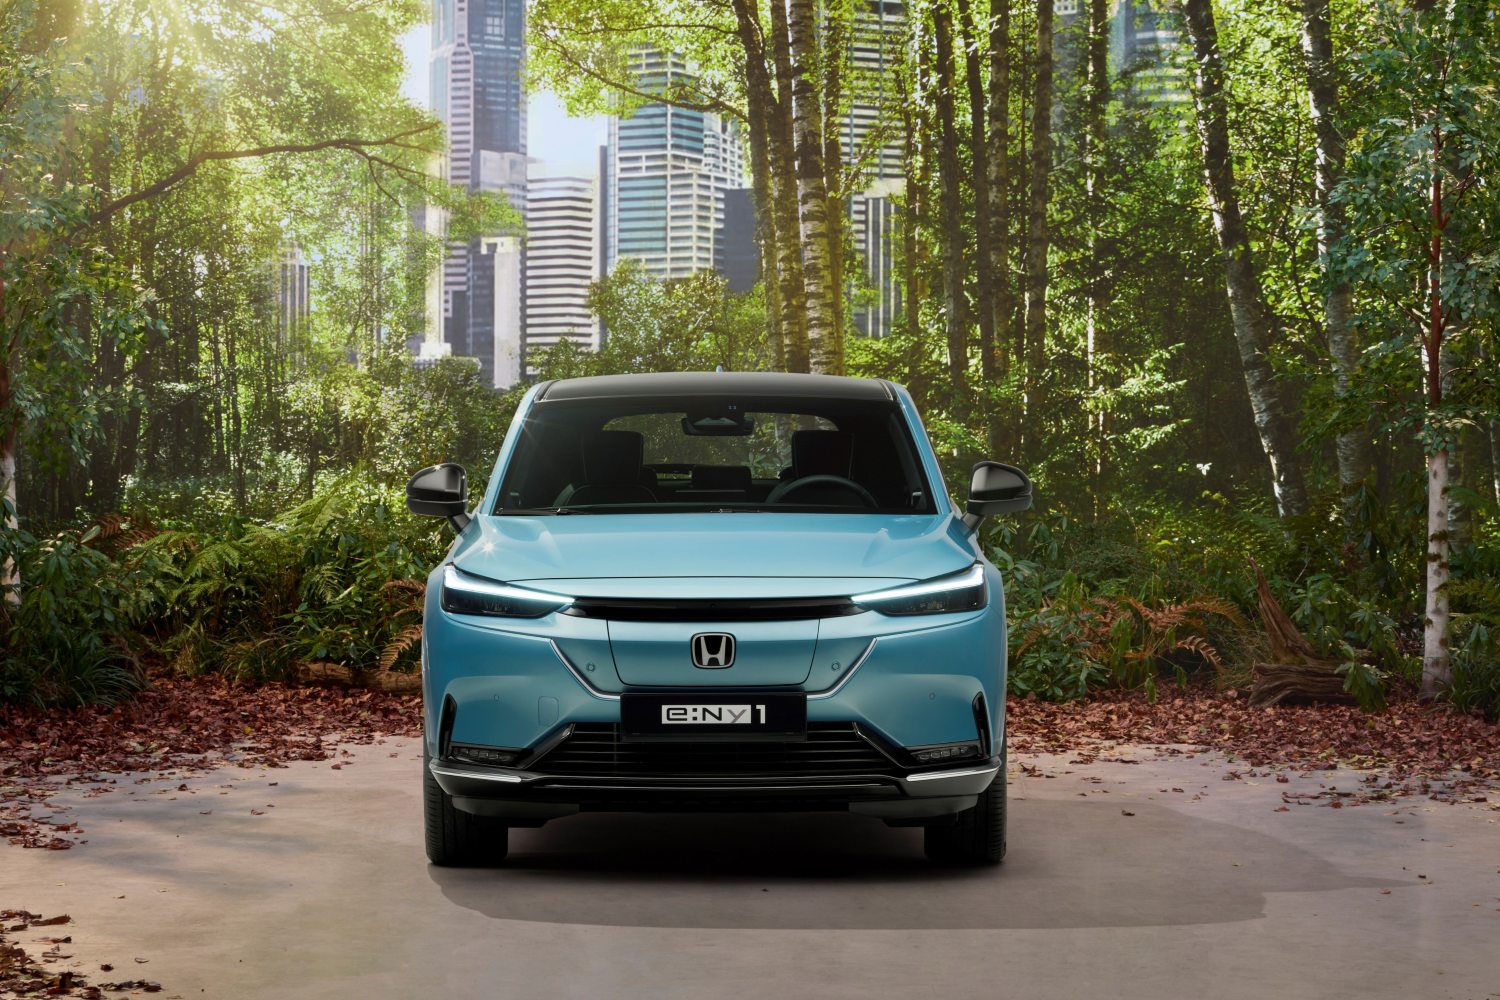 O e:Ny1 é o primeiro SUV elétrico da Honda para a Europa 